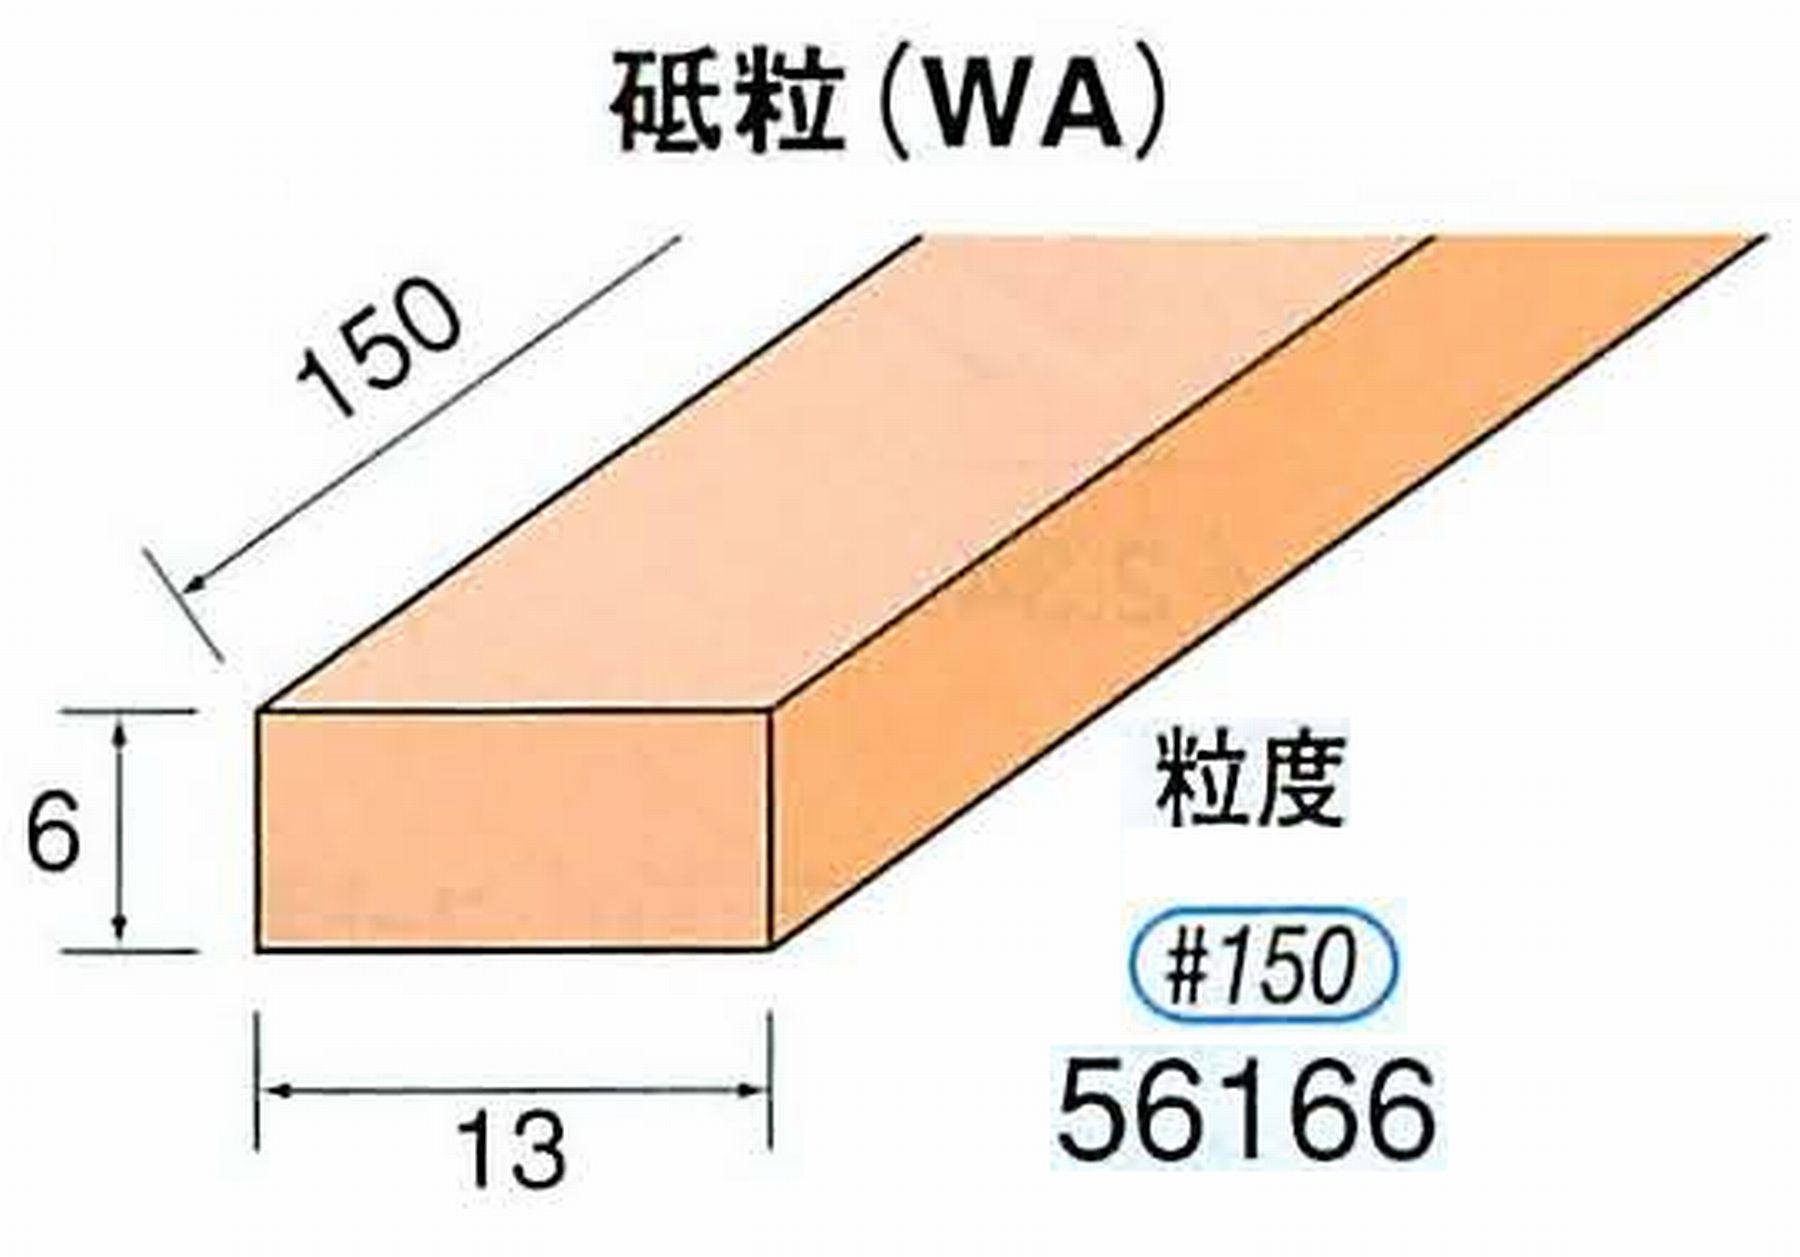 ナカニシ/NAKANISHI スティック砥石 スタンダードシリーズ 砥粒(WA) 56166